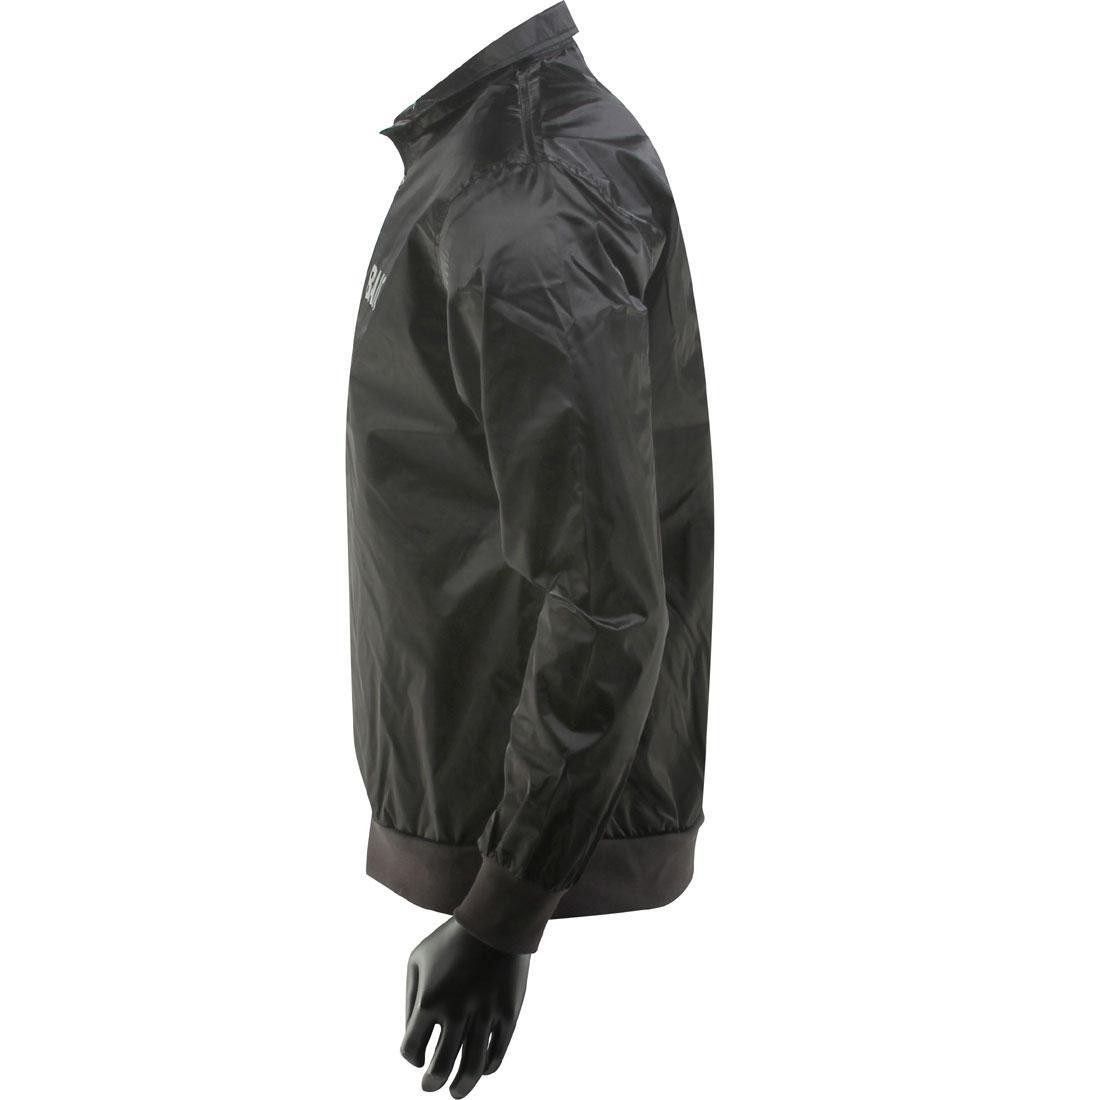 Saint Laurent lightweight zip-up jacket